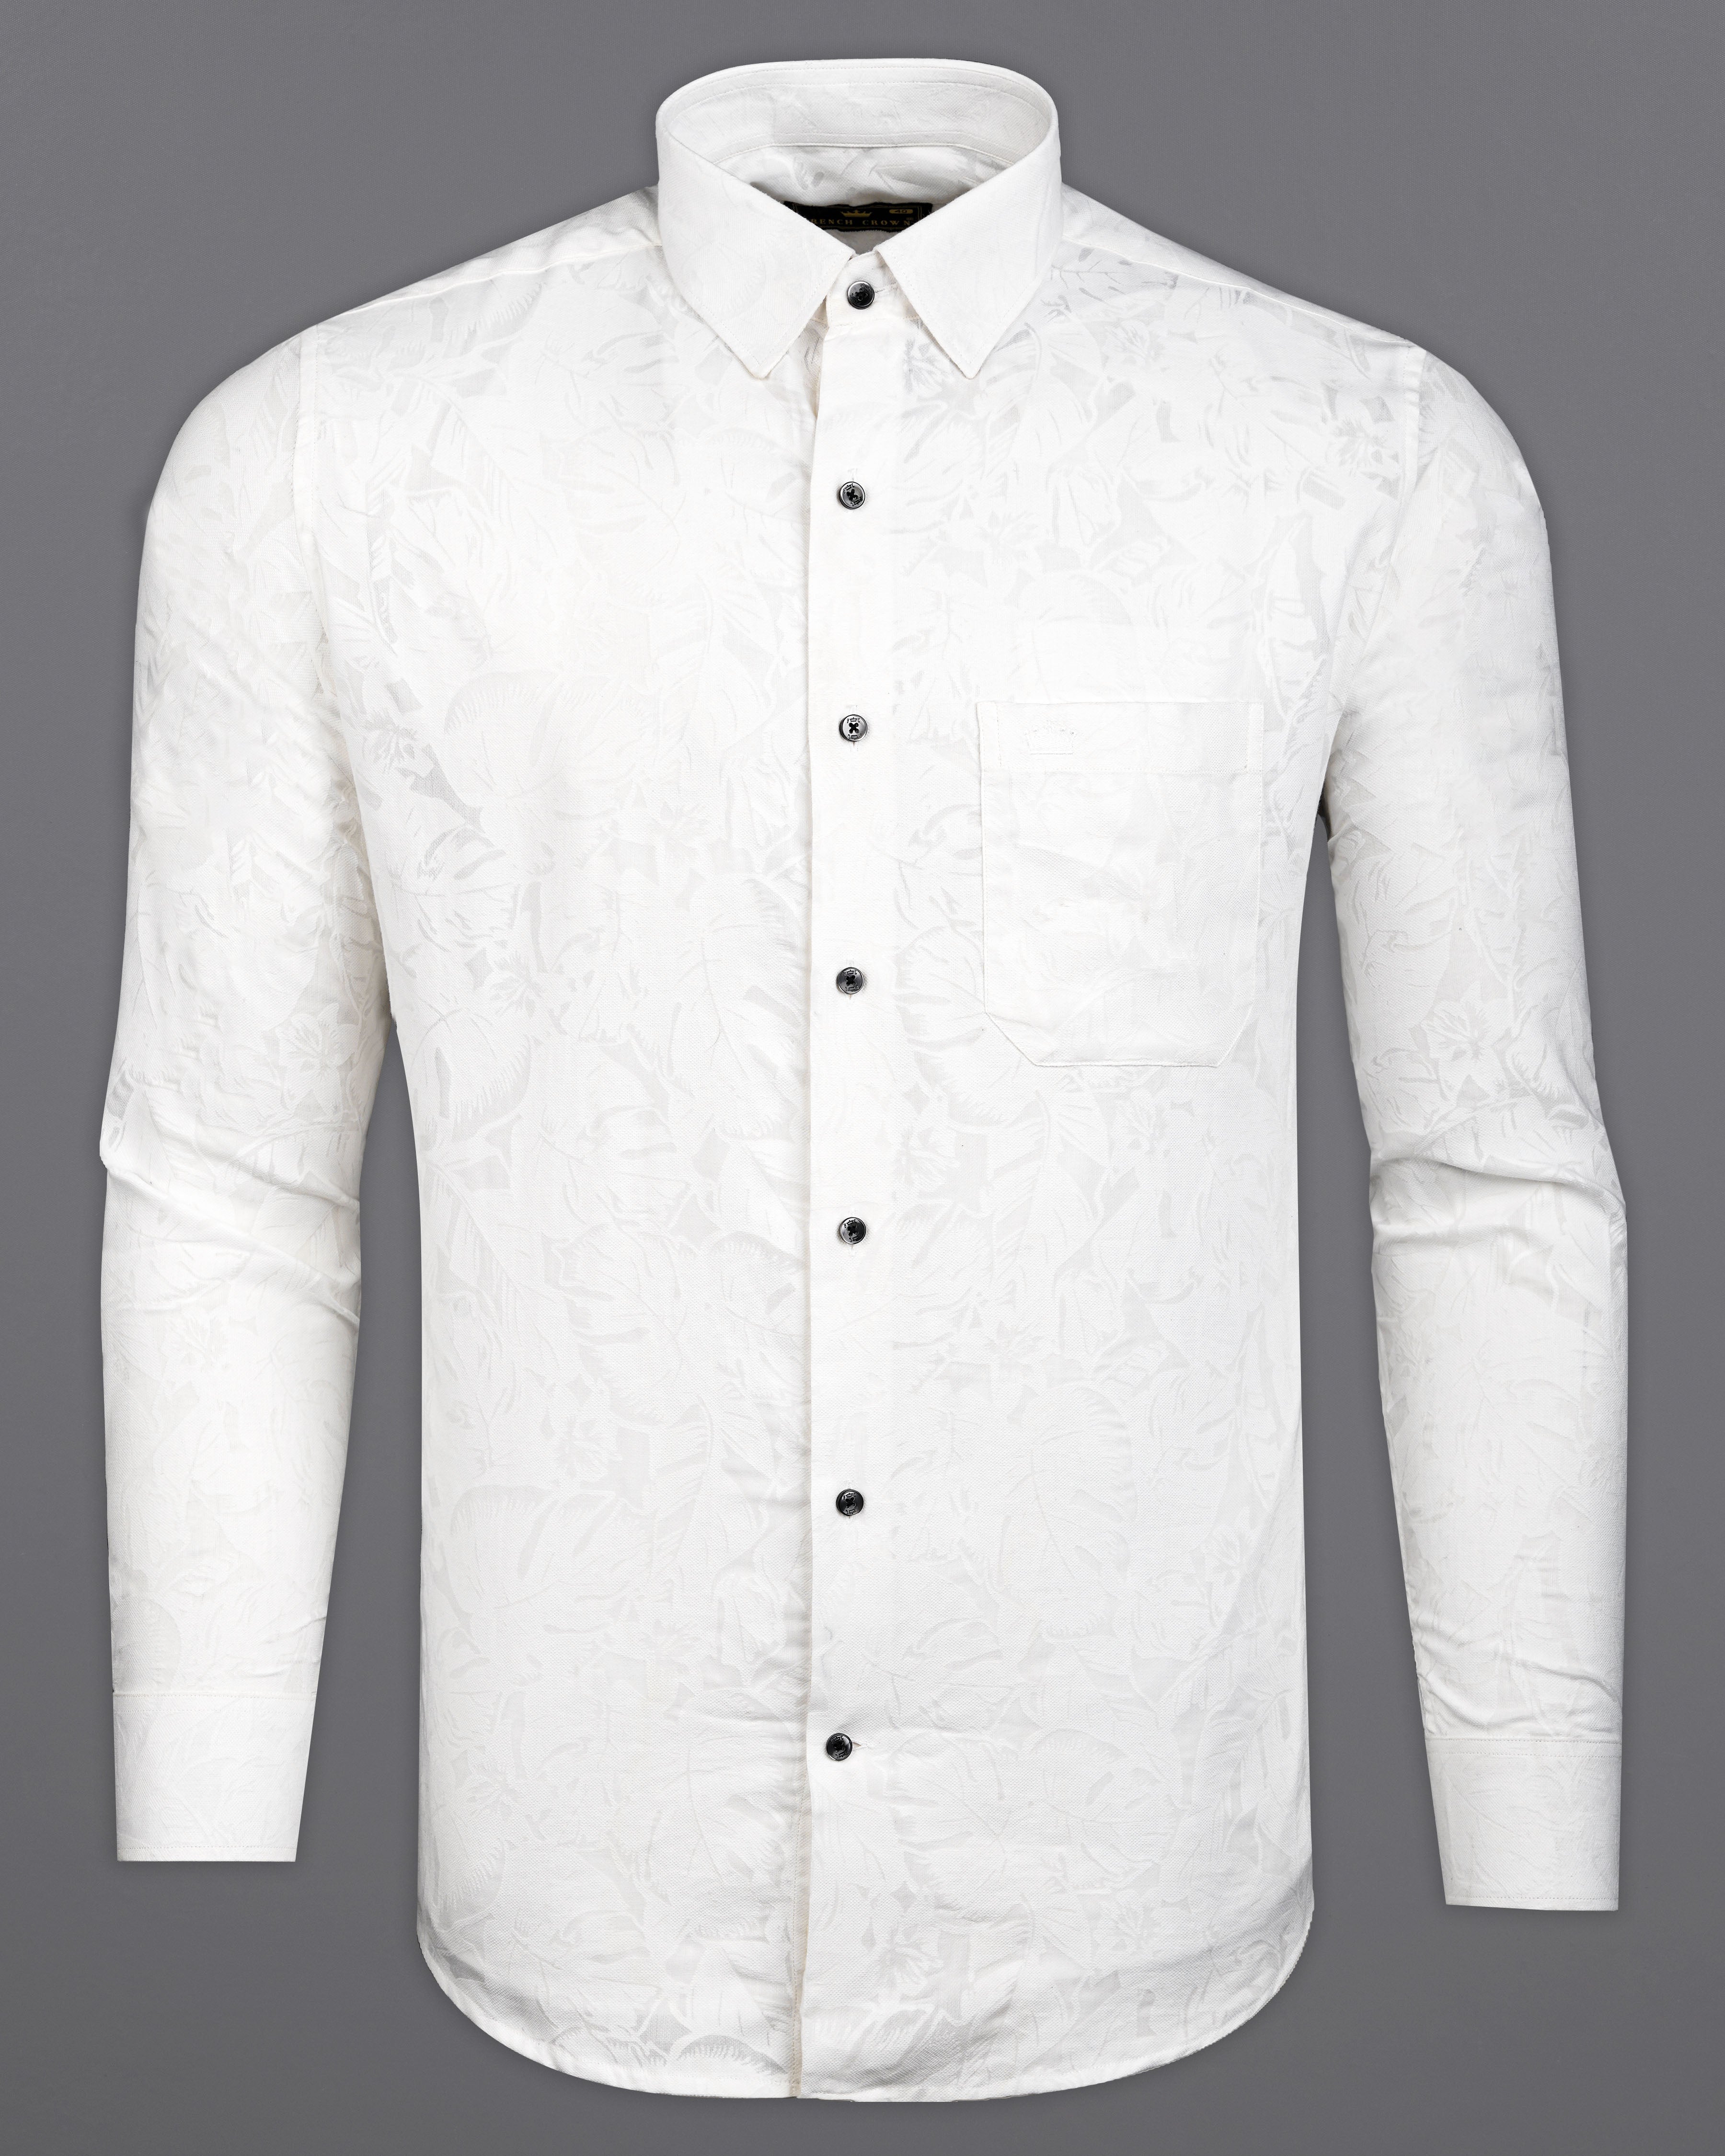 Bright White Jacquard Textured Premium Giza Cotton Shirt 9864-BLK-38, 9864-BLK-H-38, 9864-BLK-39, 9864-BLK-H-39, 9864-BLK-40, 9864-BLK-H-40, 9864-BLK-42, 9864-BLK-H-42, 9864-BLK-44, 9864-BLK-H-44, 9864-BLK-46, 9864-BLK-H-46, 9864-BLK-48, 9864-BLK-H-48, 9864-BLK-50, 9864-BLK-H-50, 9864-BLK-52, 9864-BLK-H-52